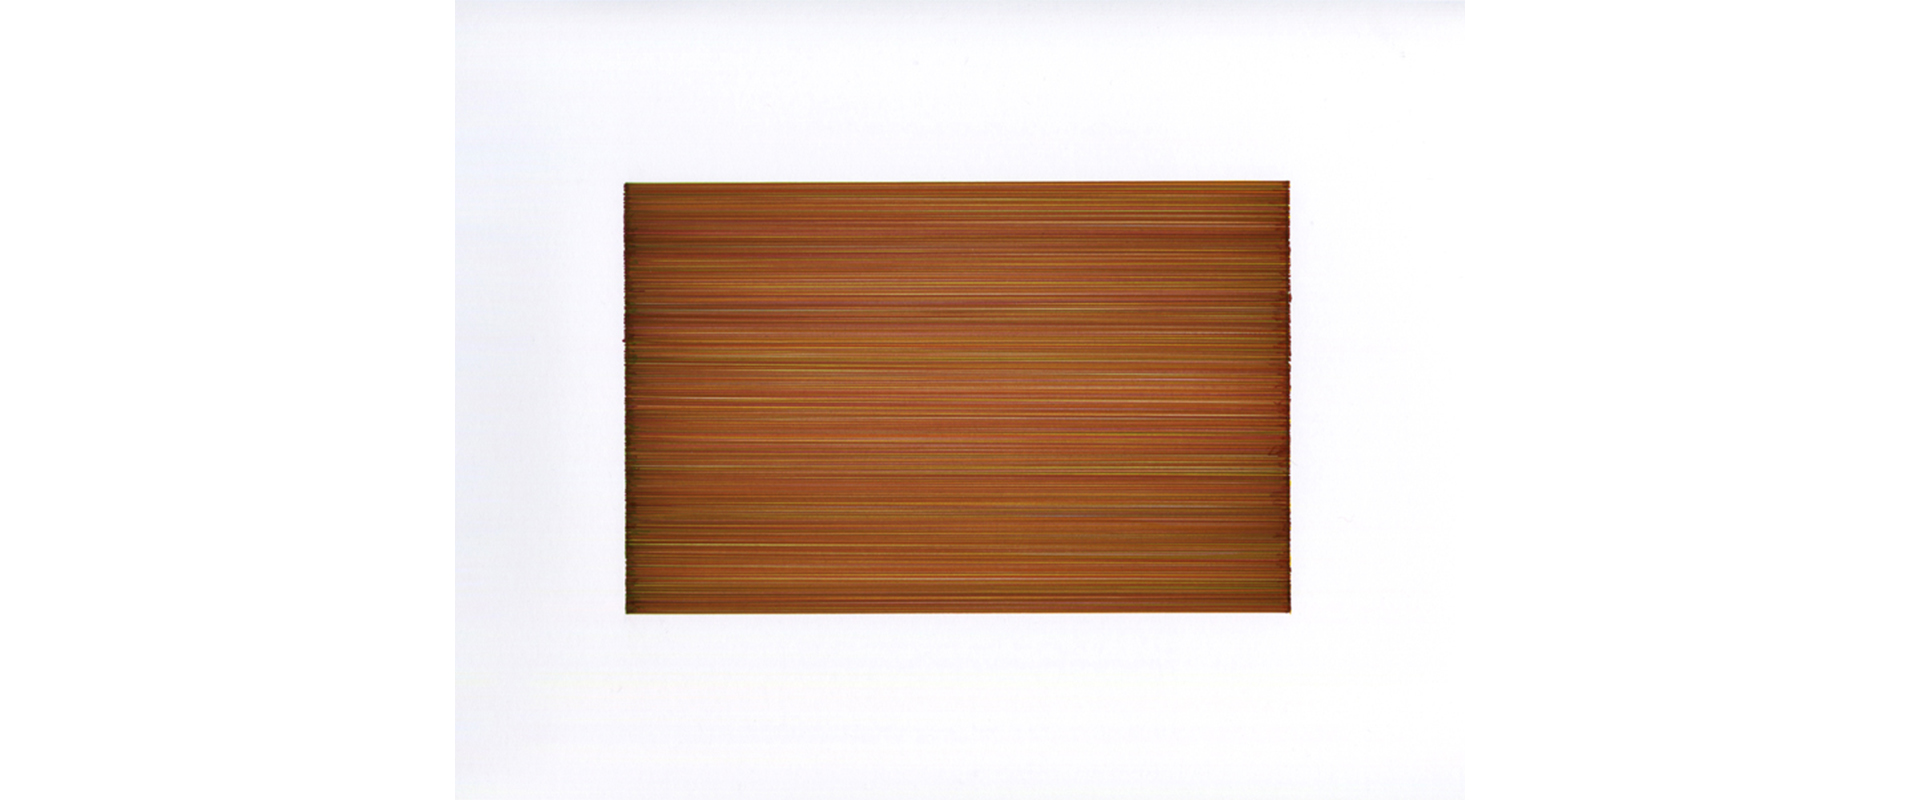 Lars Strandh, Ohne Titel (T-2111) – 2021, Farbige Tinte auf Papier, 11,5 x 17,5 cm (Blattgröße 42 x 29,7cm)